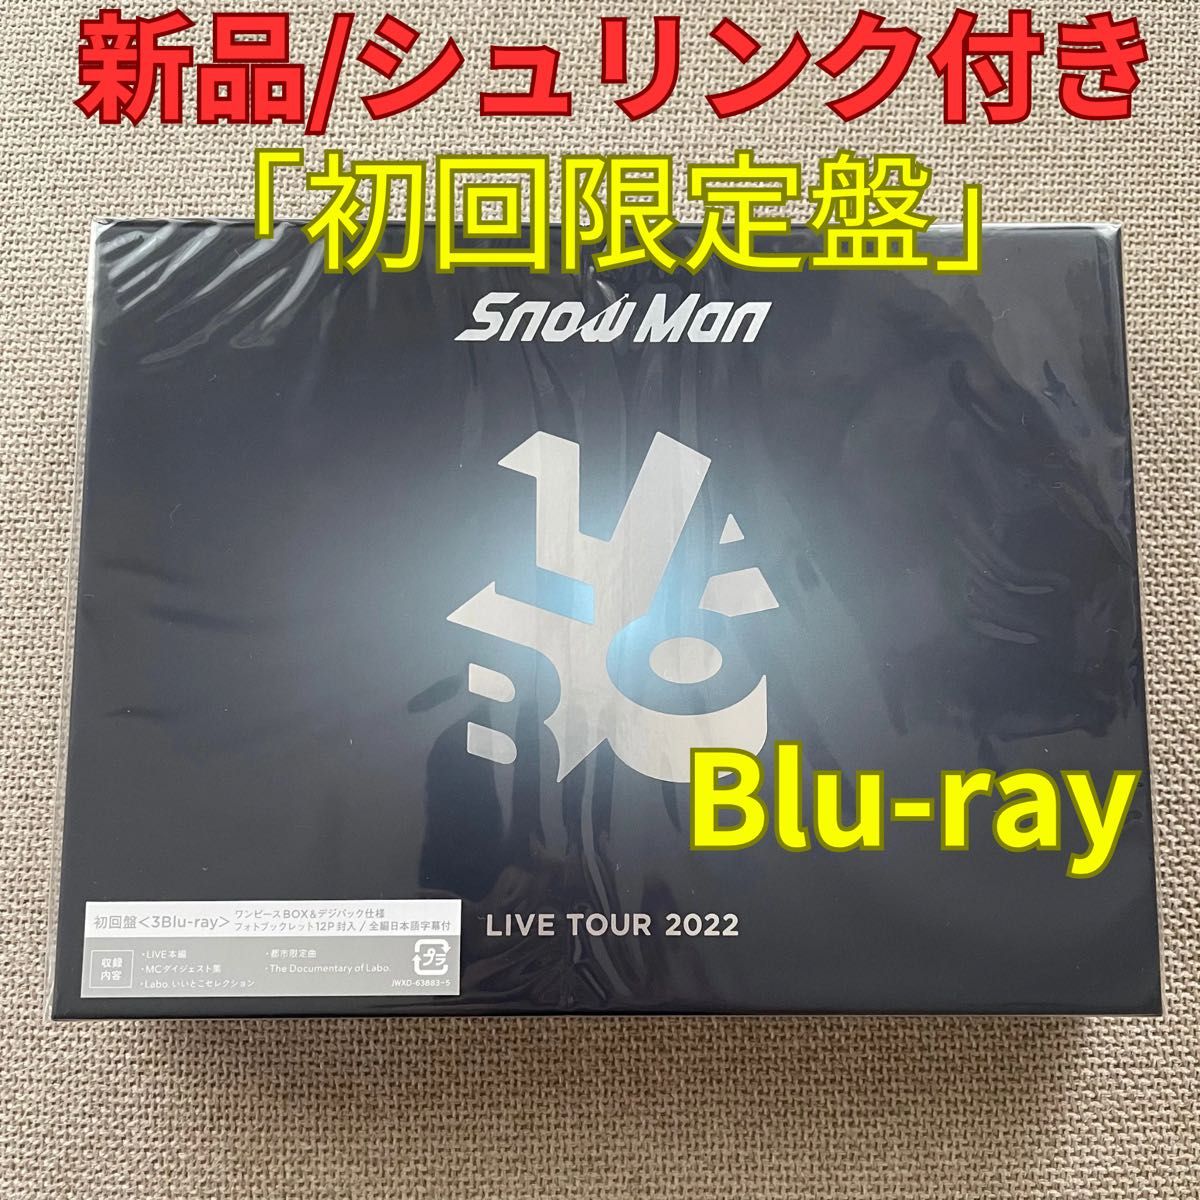 【新品/未開封】Snow Man LIVE TOUR 2022 Labo. 「初回盤」 Blu-ray